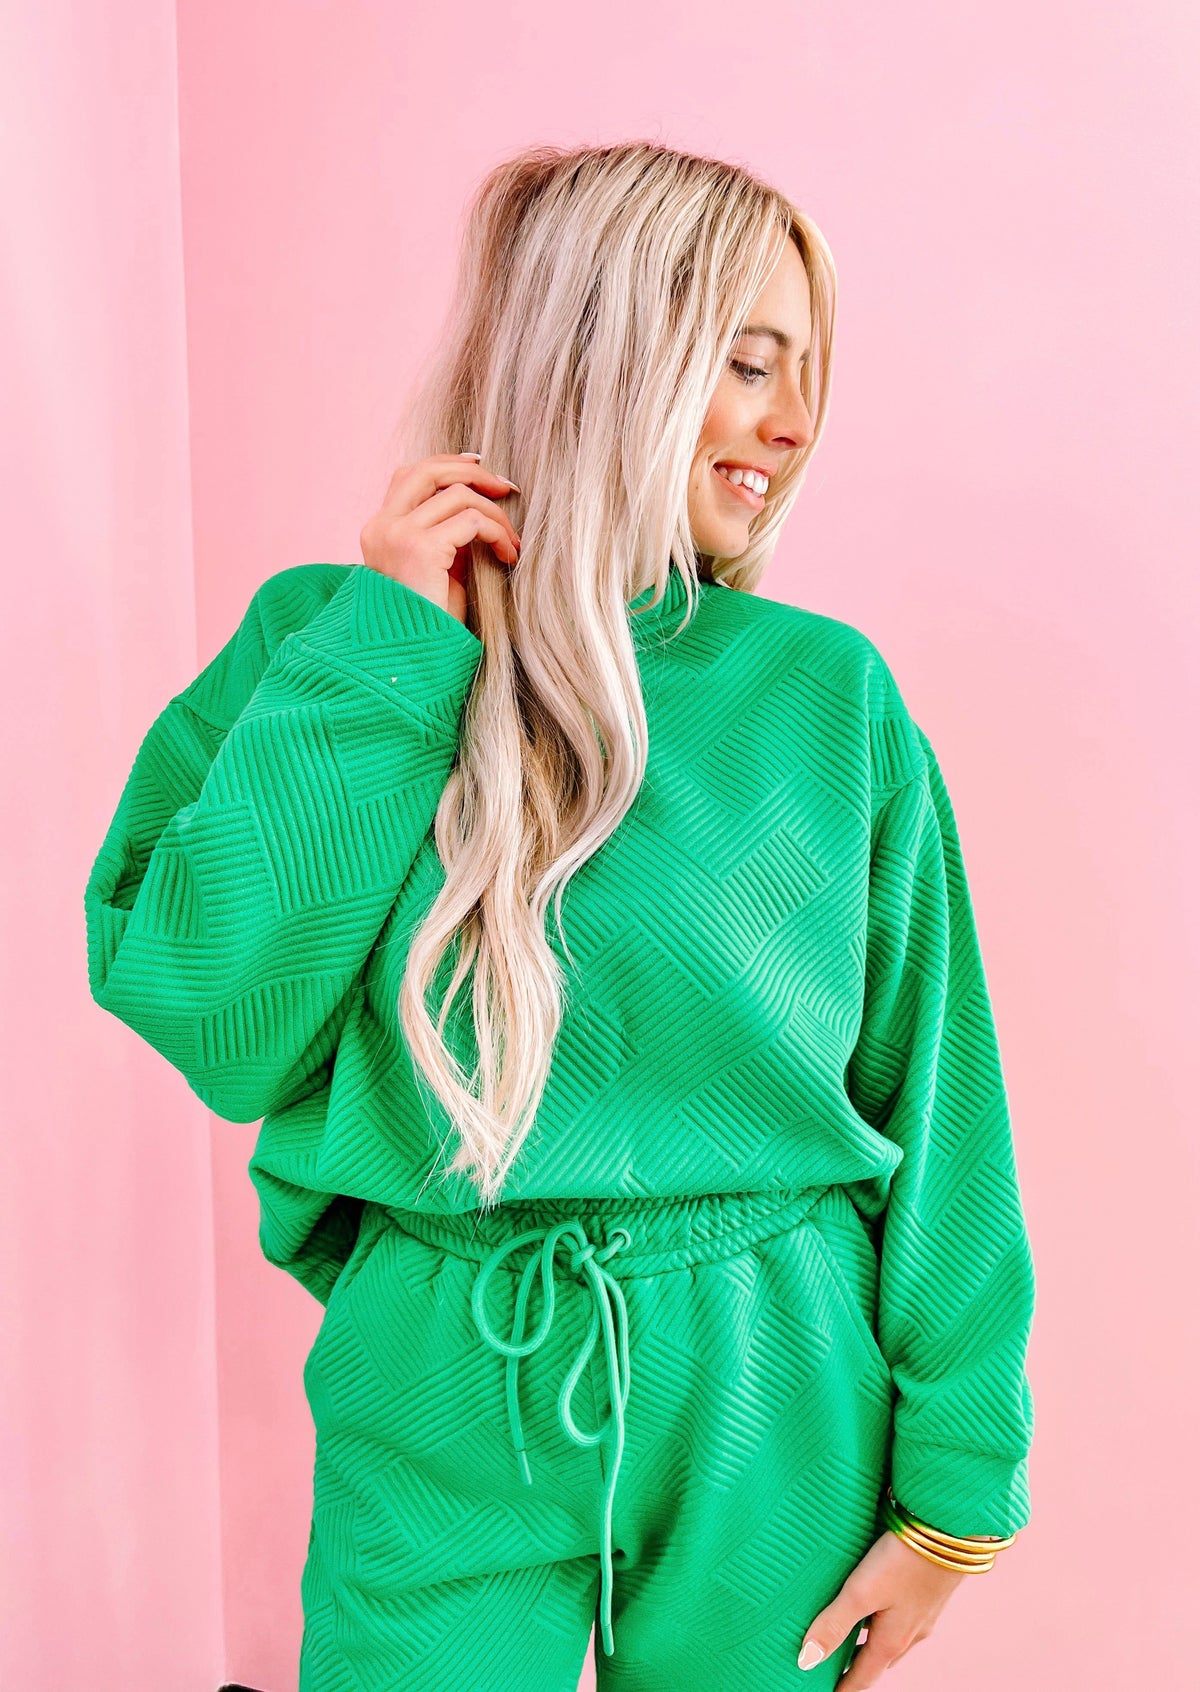 Green Textured Sweatshirt